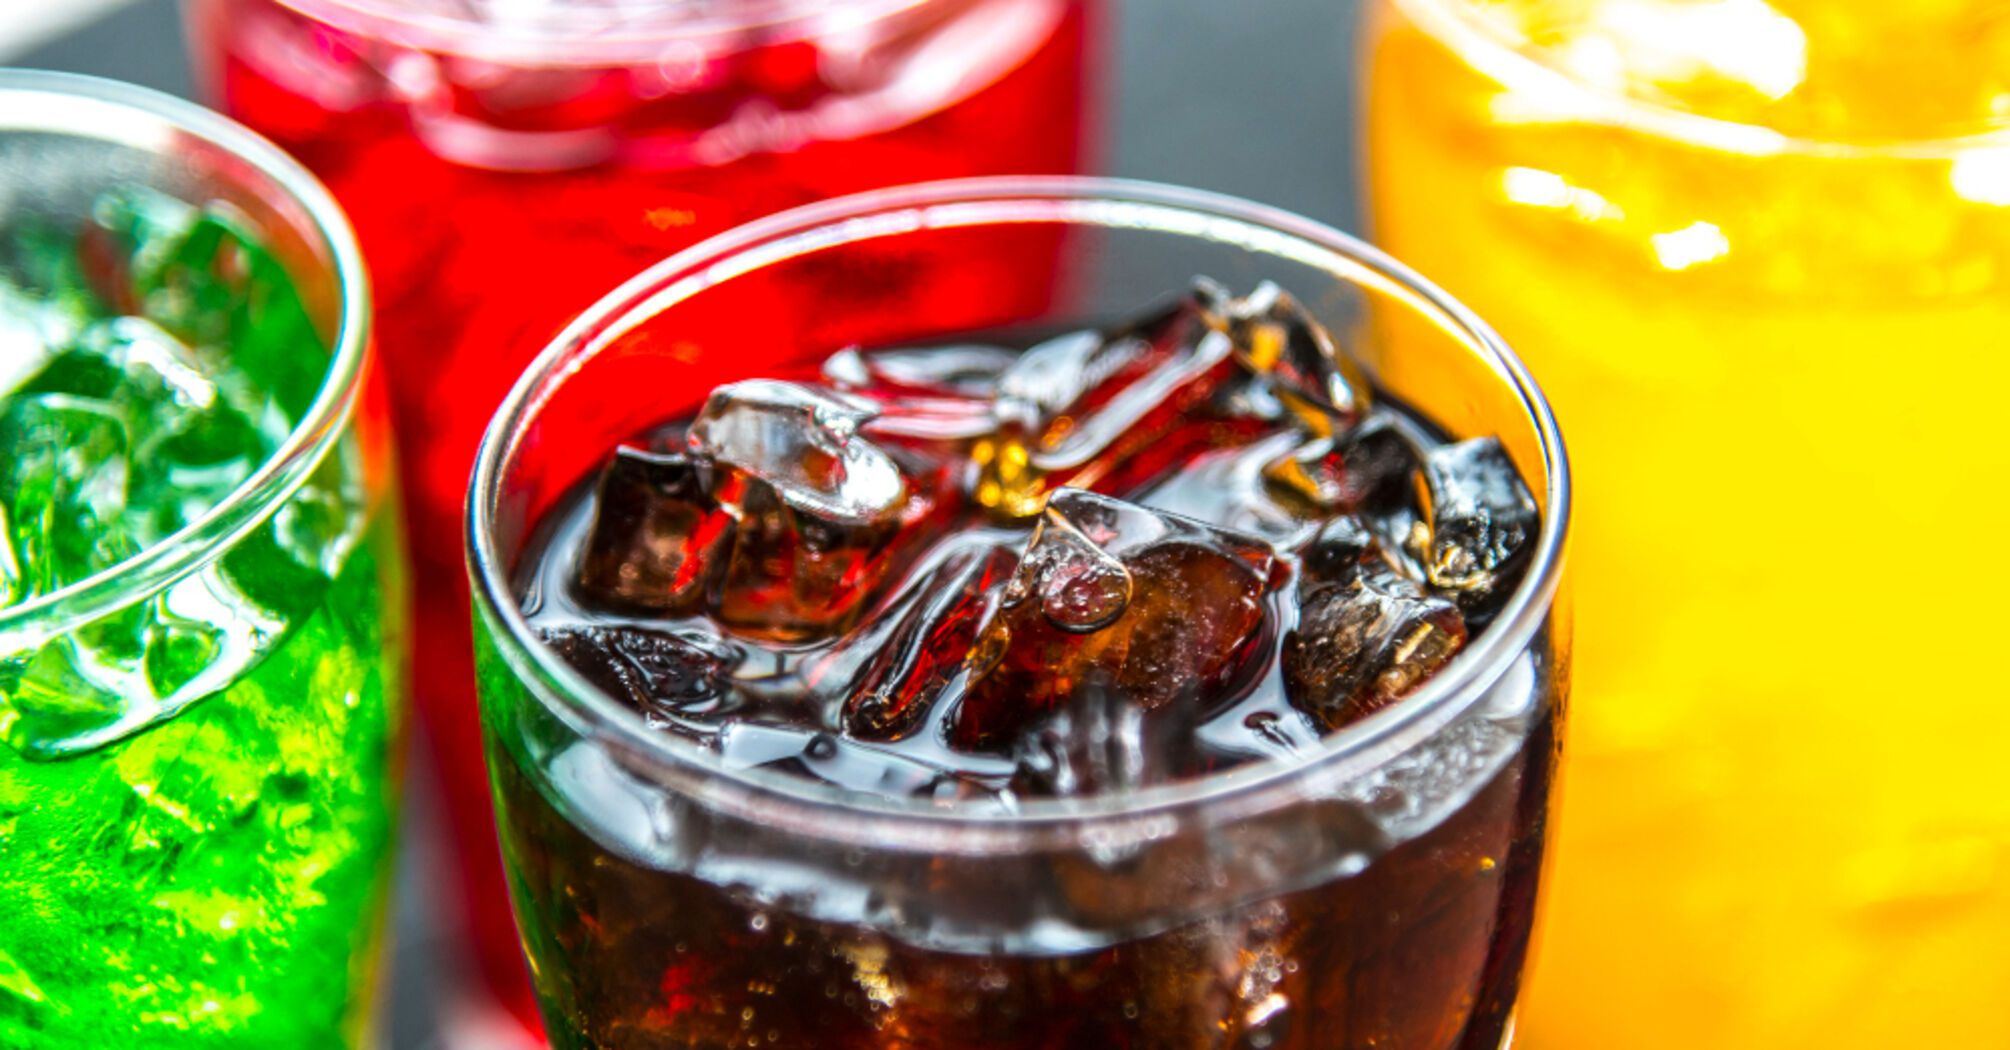 Як споживання солодких напоїв впливає на здоров’я і чому 'податок на цукор' потрібен